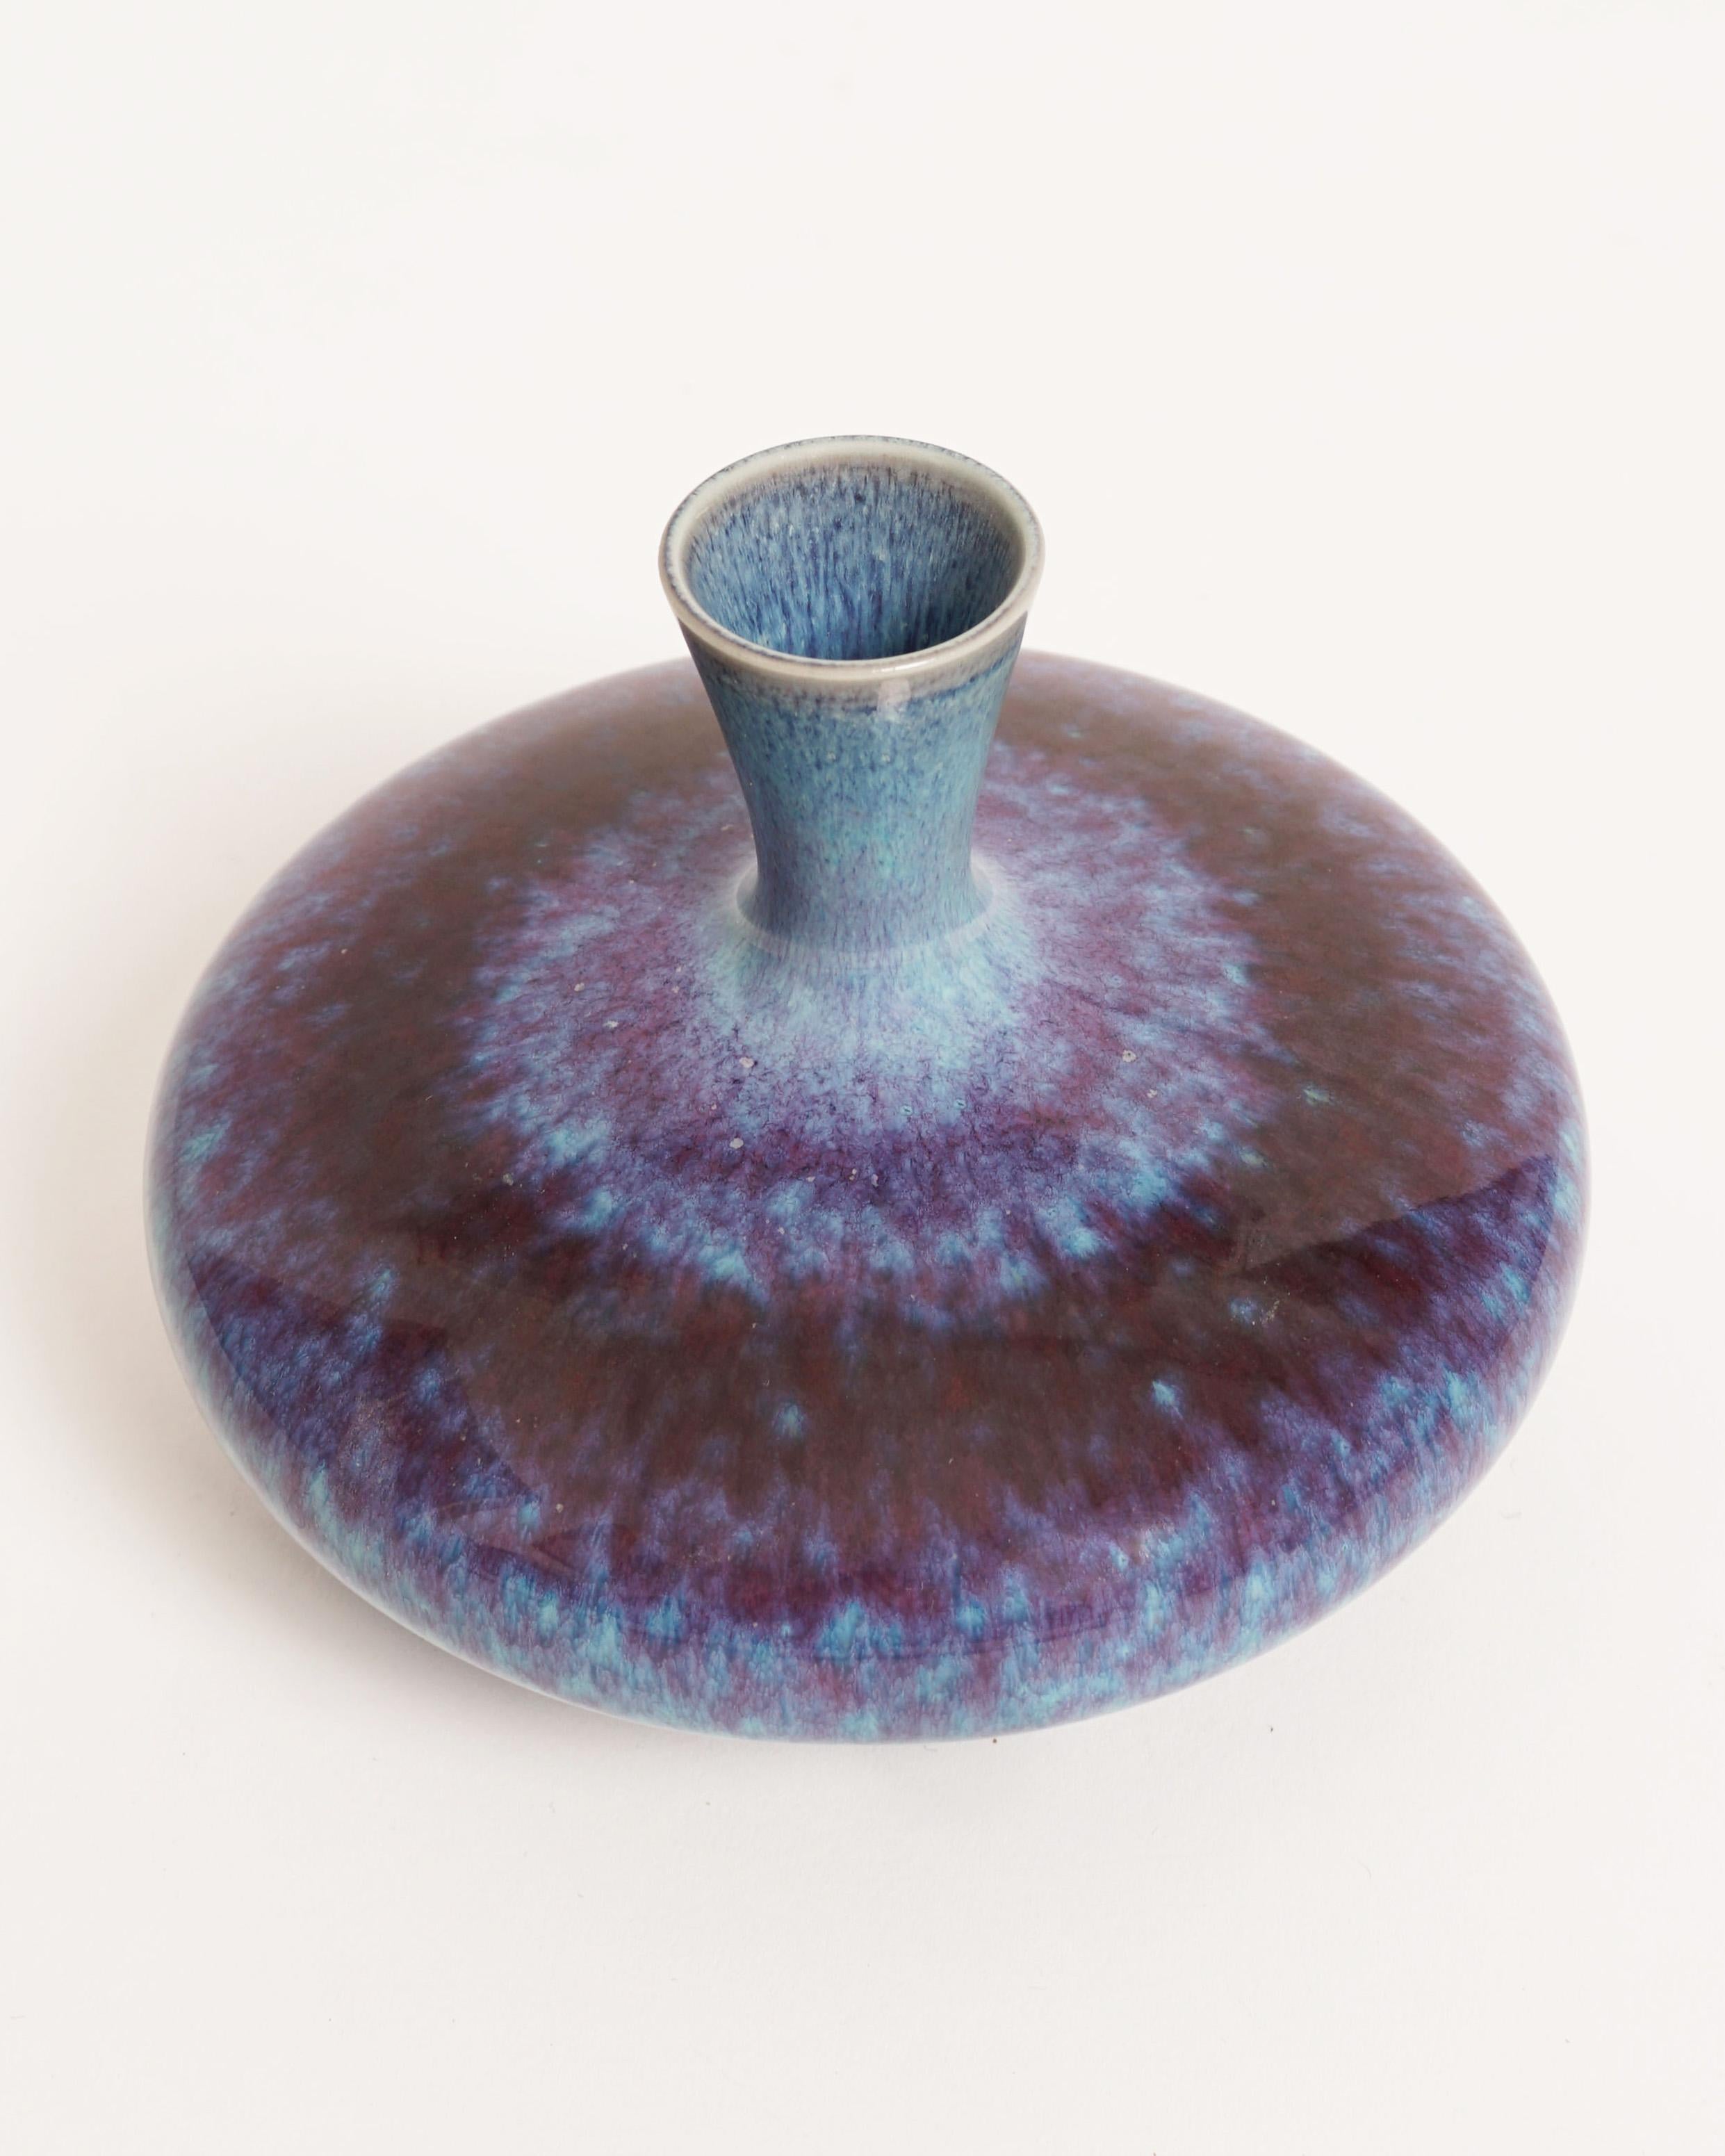 Berndt Friberg
Ceramic vase, 1960's
Marked: Friberg
Measures: H : 10 cm (3.9